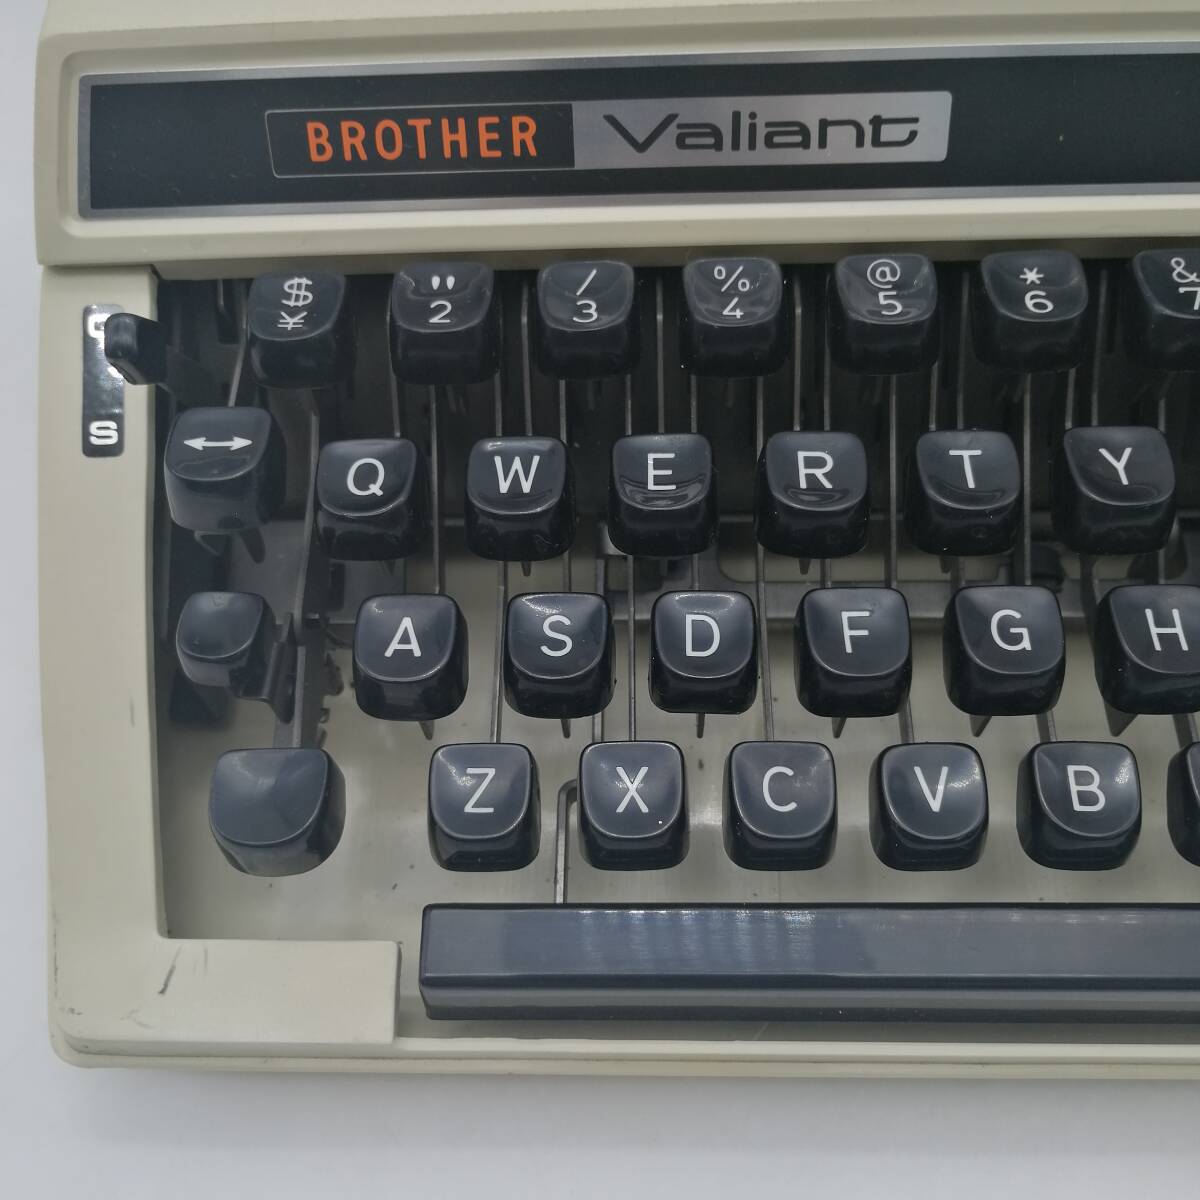 t2726 BROTHER ブラザー Valiant タイプライター コレクション 713 昭和レトロ アンティーク 中古品 現状品 電化製品_画像3